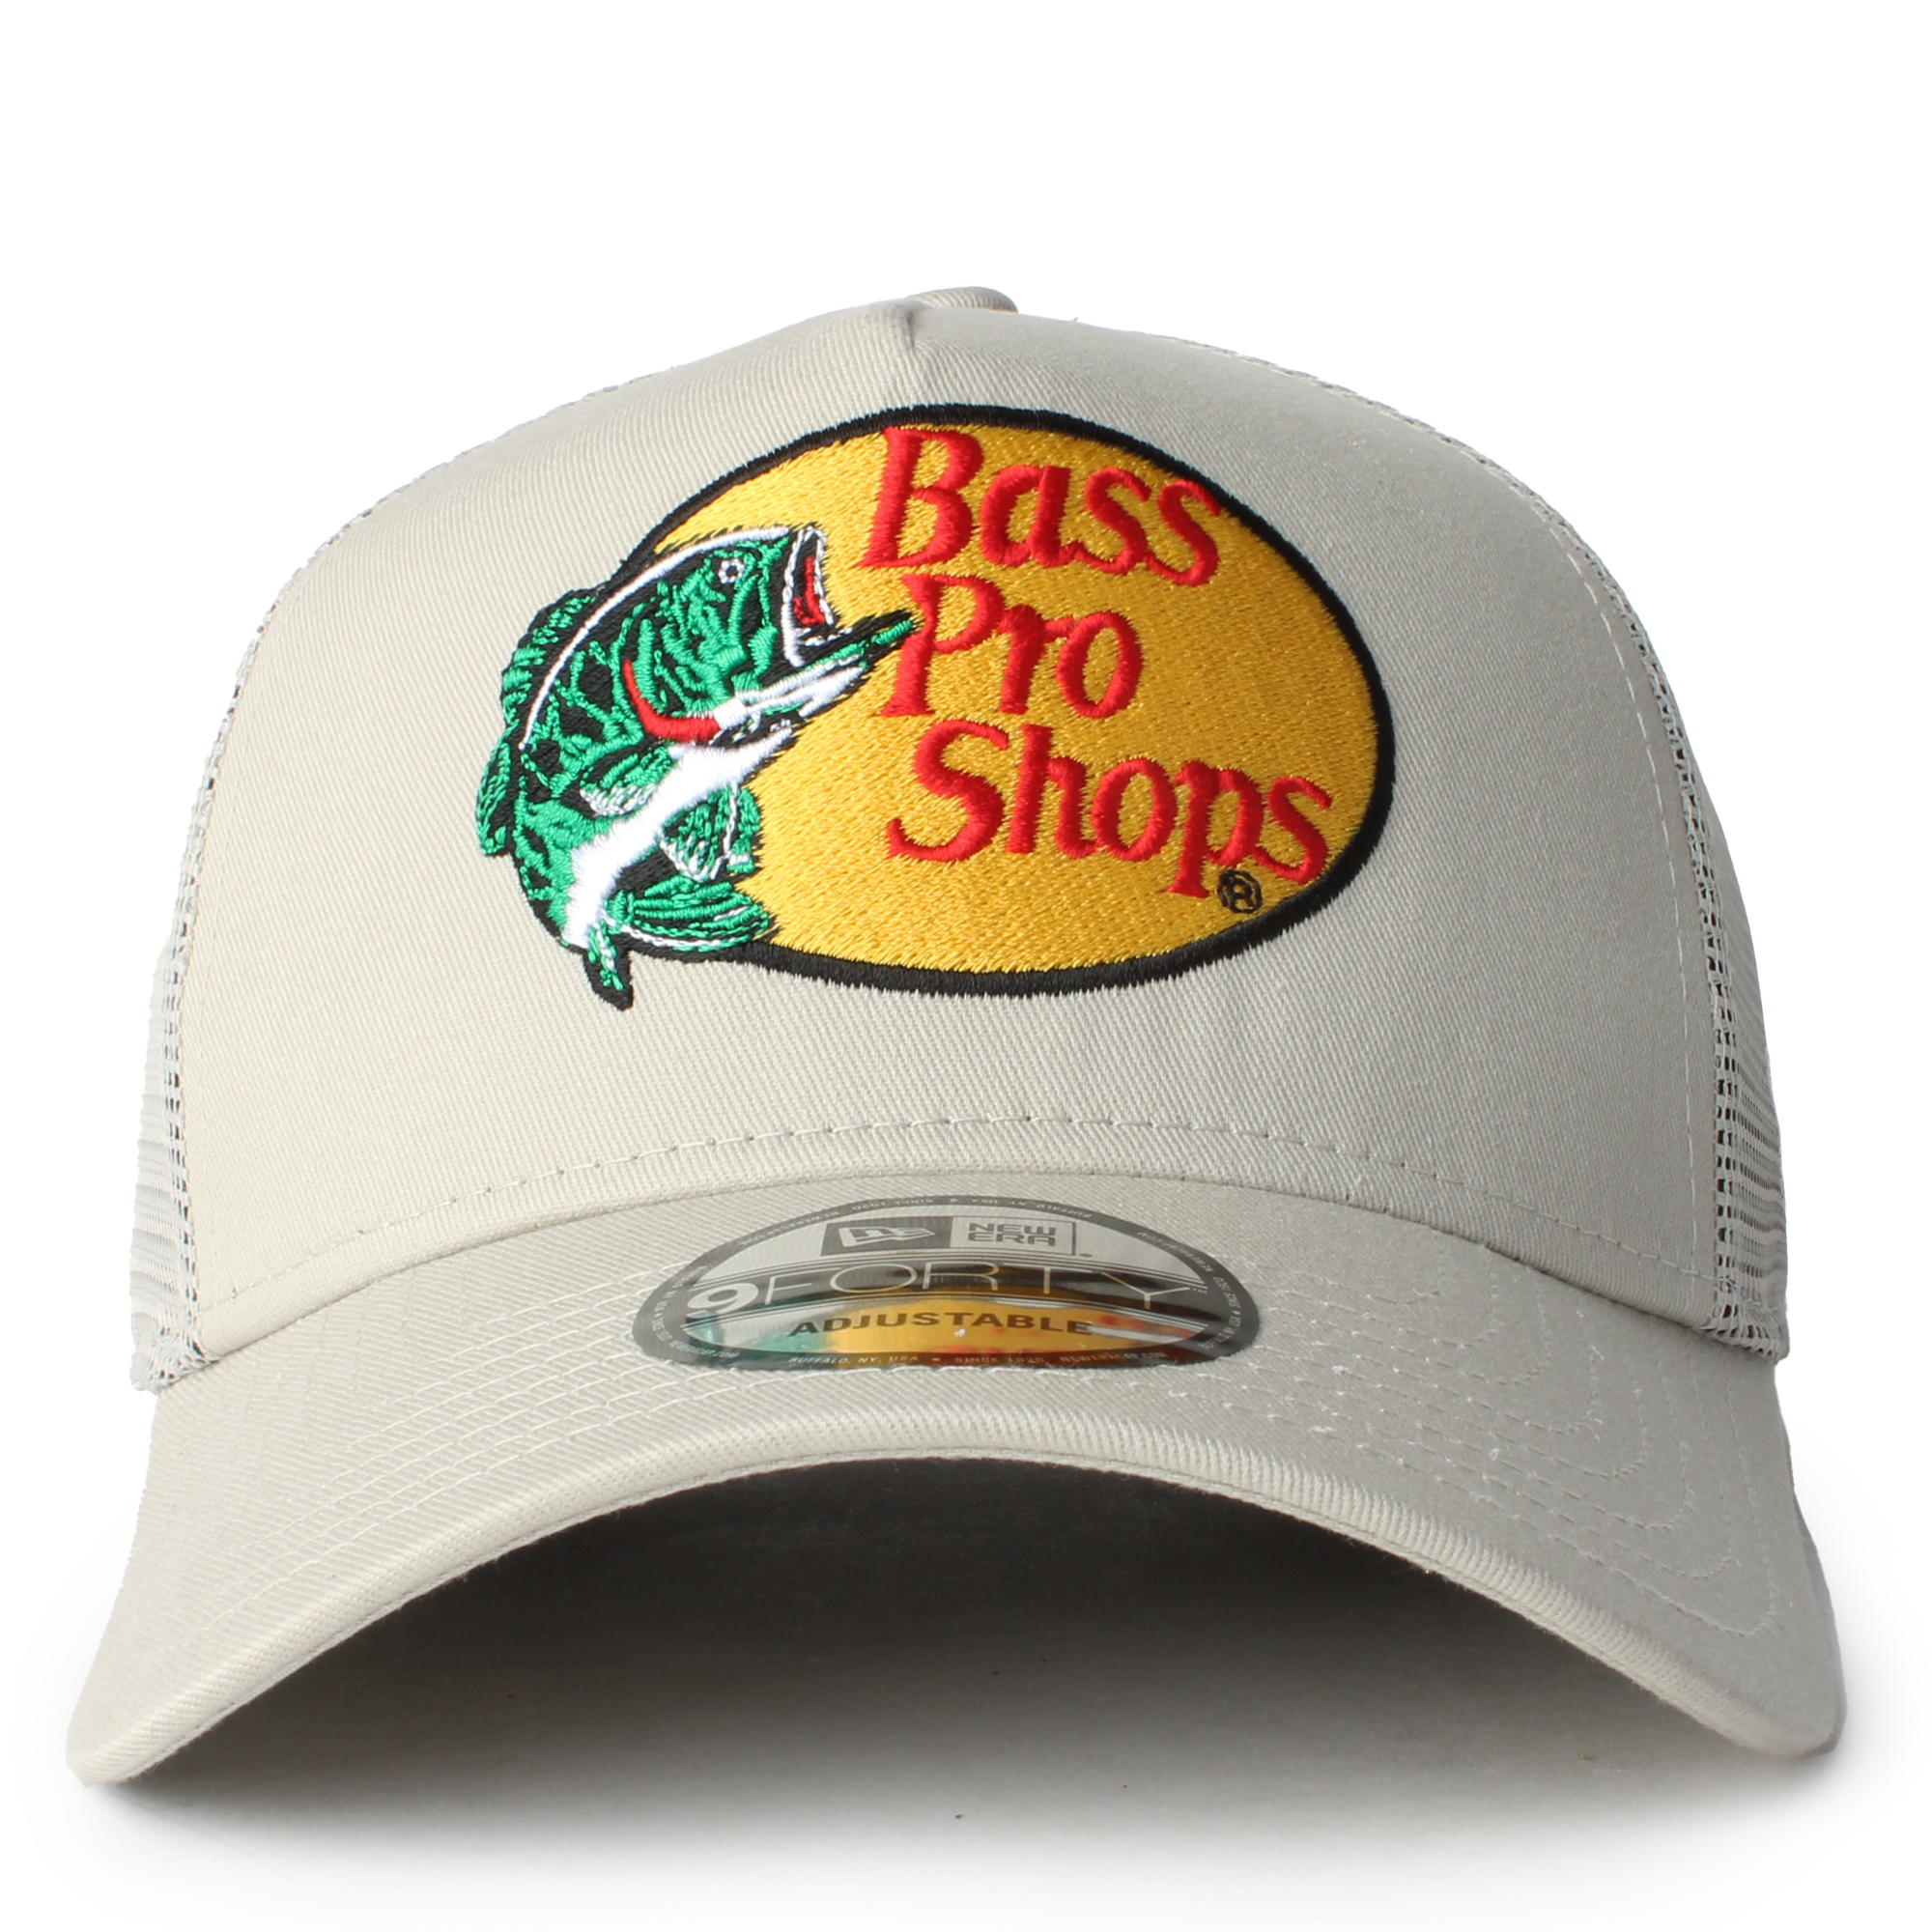 Bass Pro Shops Logo Long-Sleeve Fishing Jersey for Men